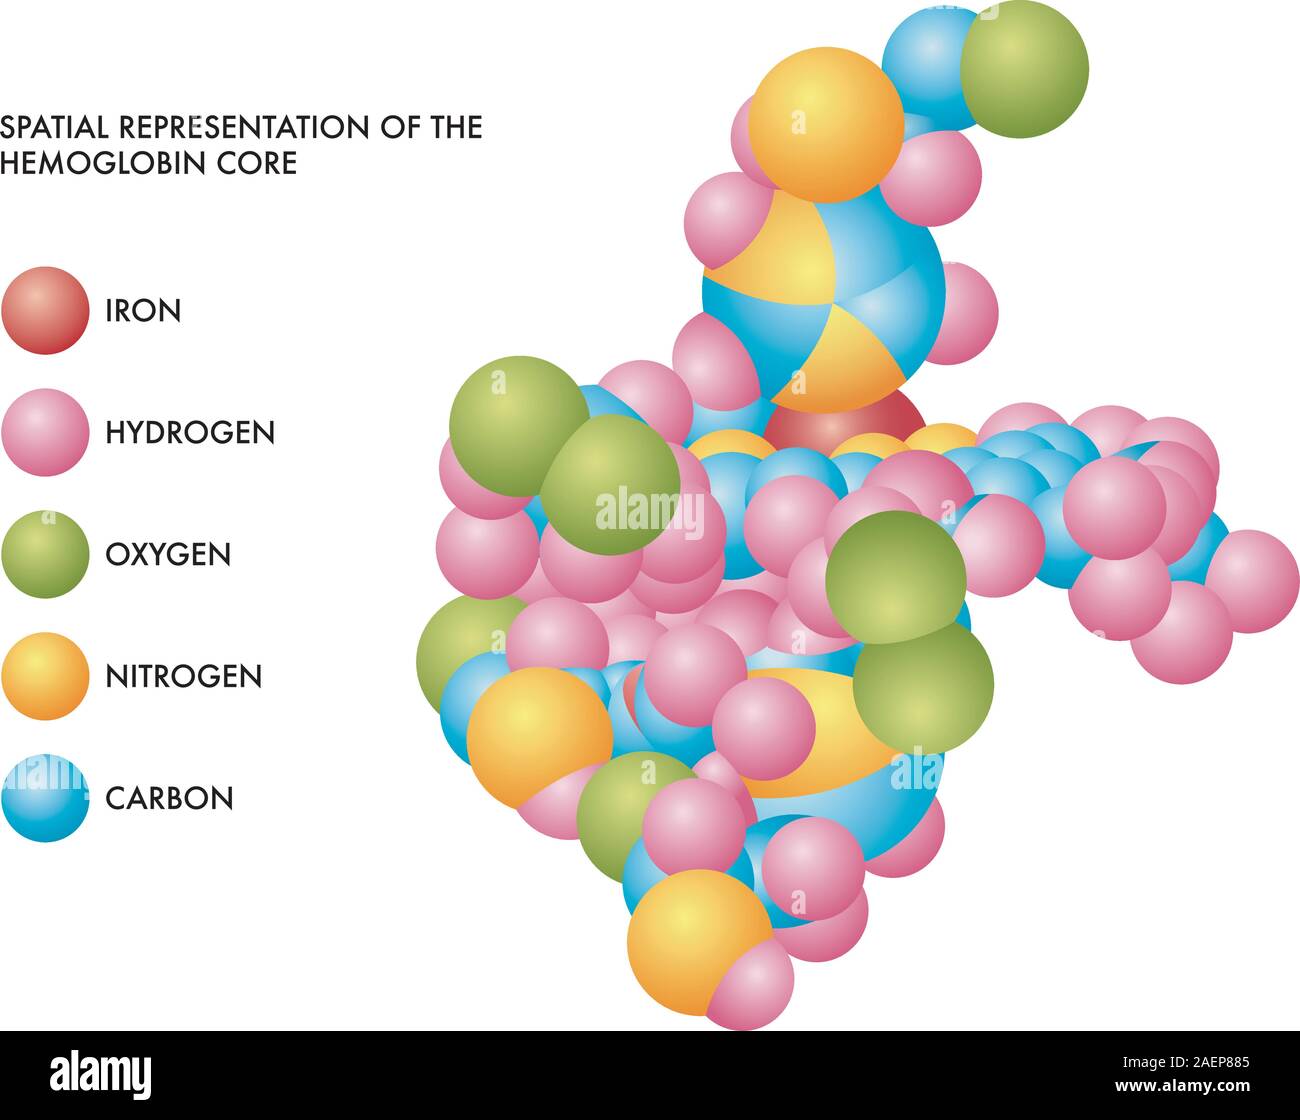 Illustrazione medica di emoglobina core rappresentazione spaziale con molecole di ferro, idrogeno, ossigeno, azoto e carbonio in codificati a colori forme. Illustrazione Vettoriale